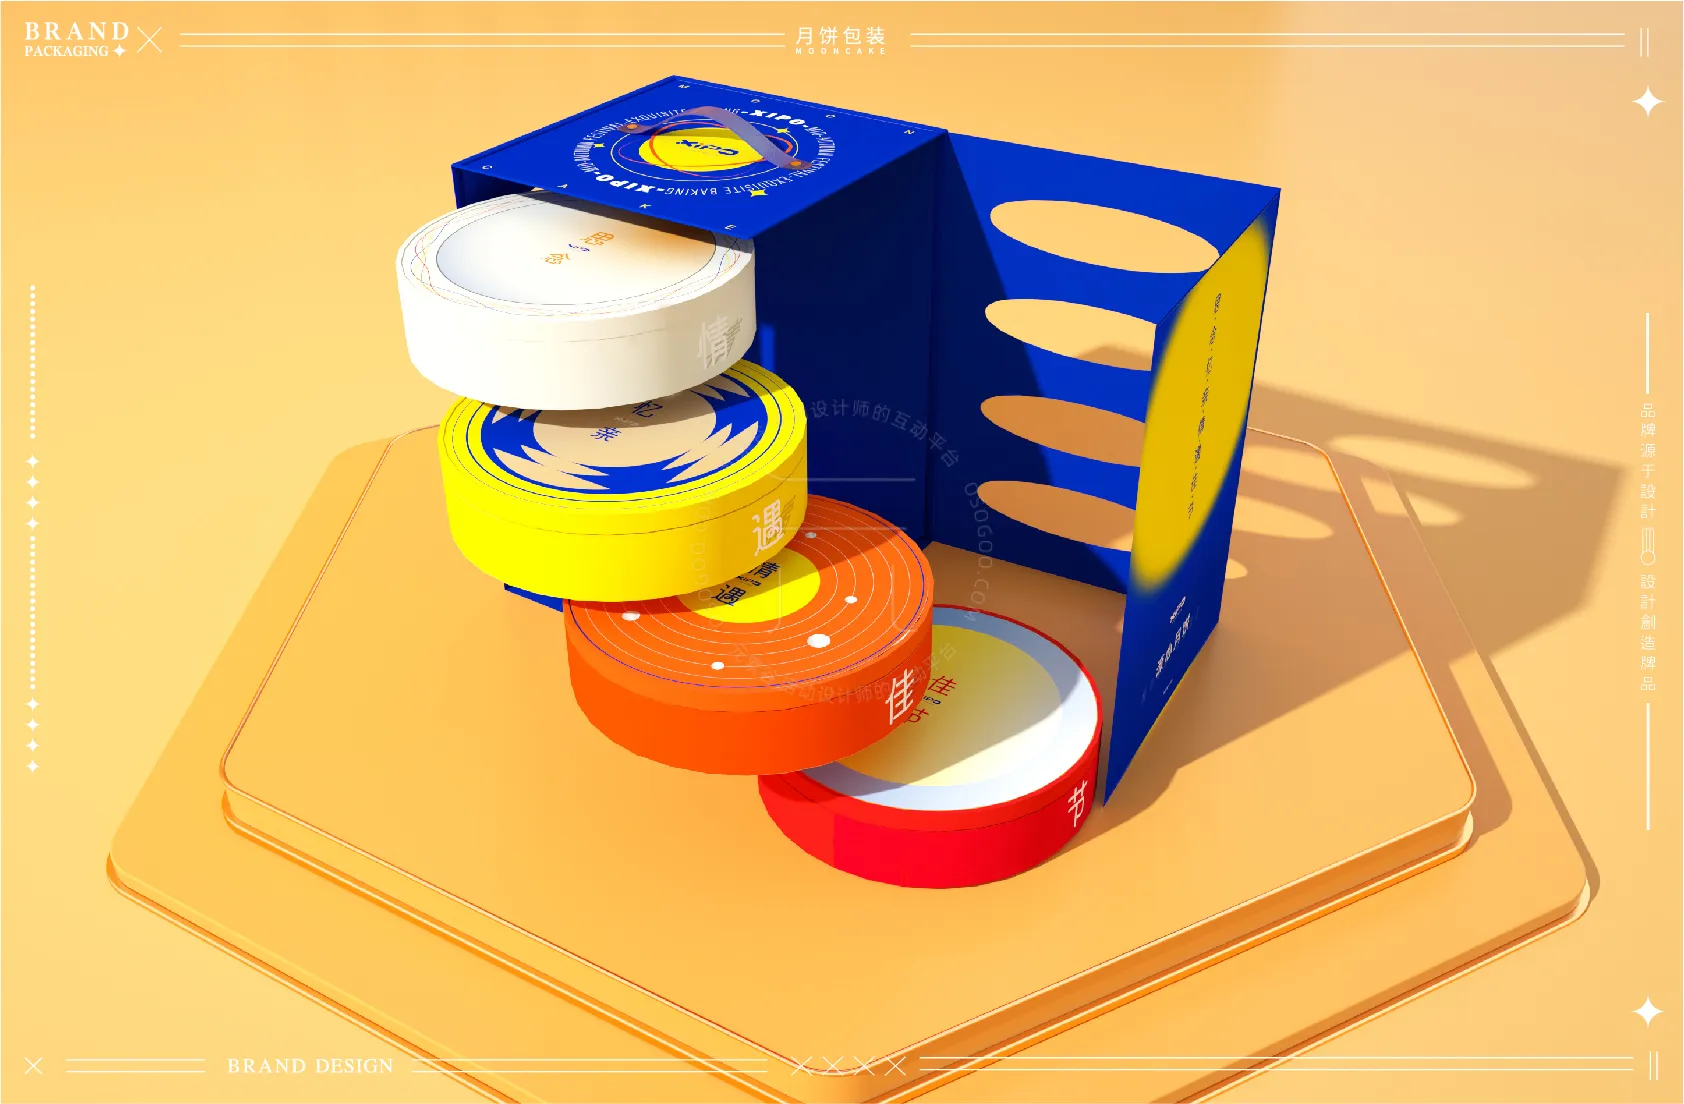 月饼包装设计-包装设计-食品包装设计-月饼礼盒设计